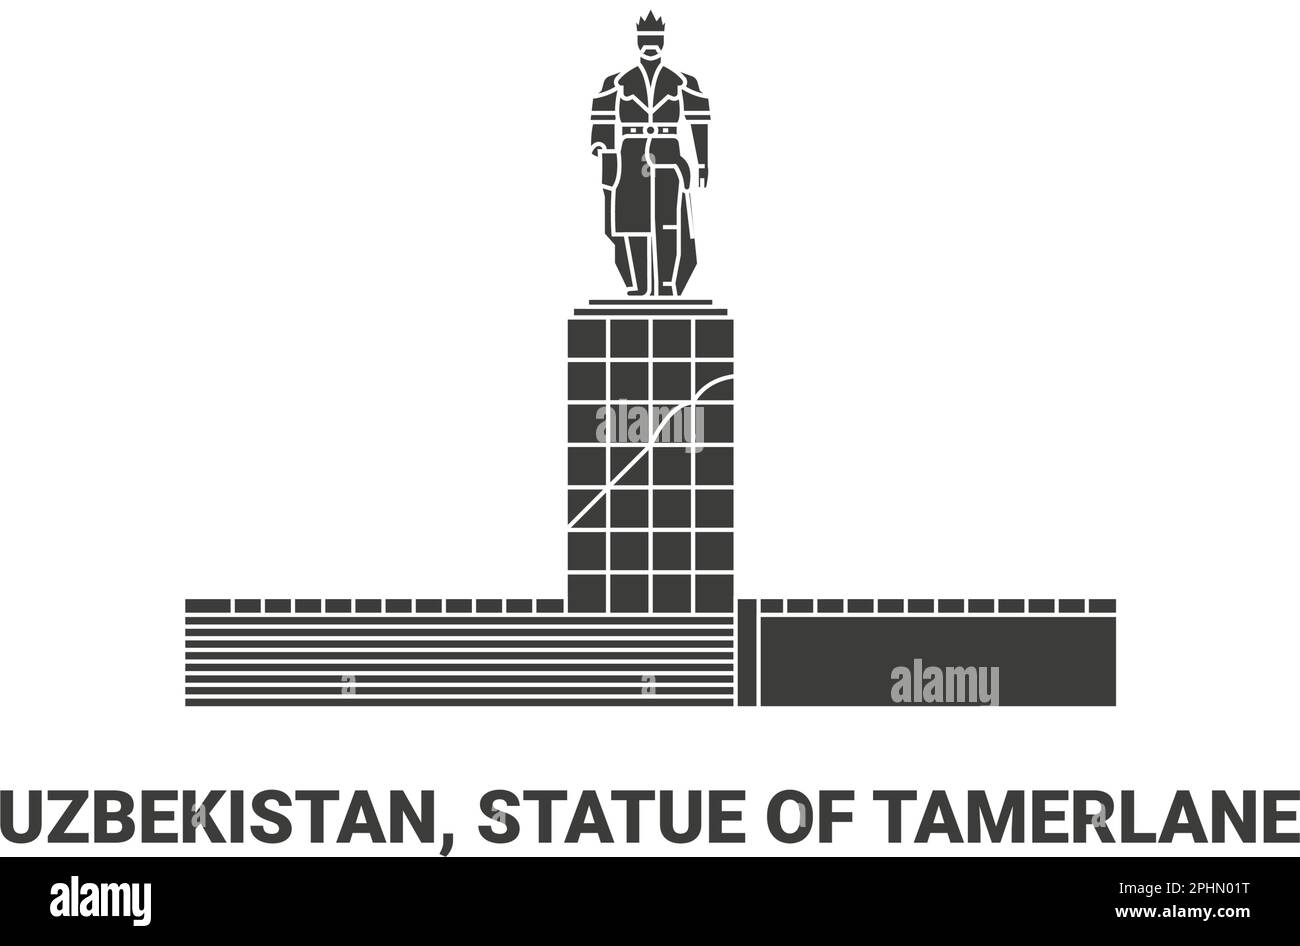 Uzbekistan, Statue Of Tamerlane, travel landmark vector illustration Stock Vector